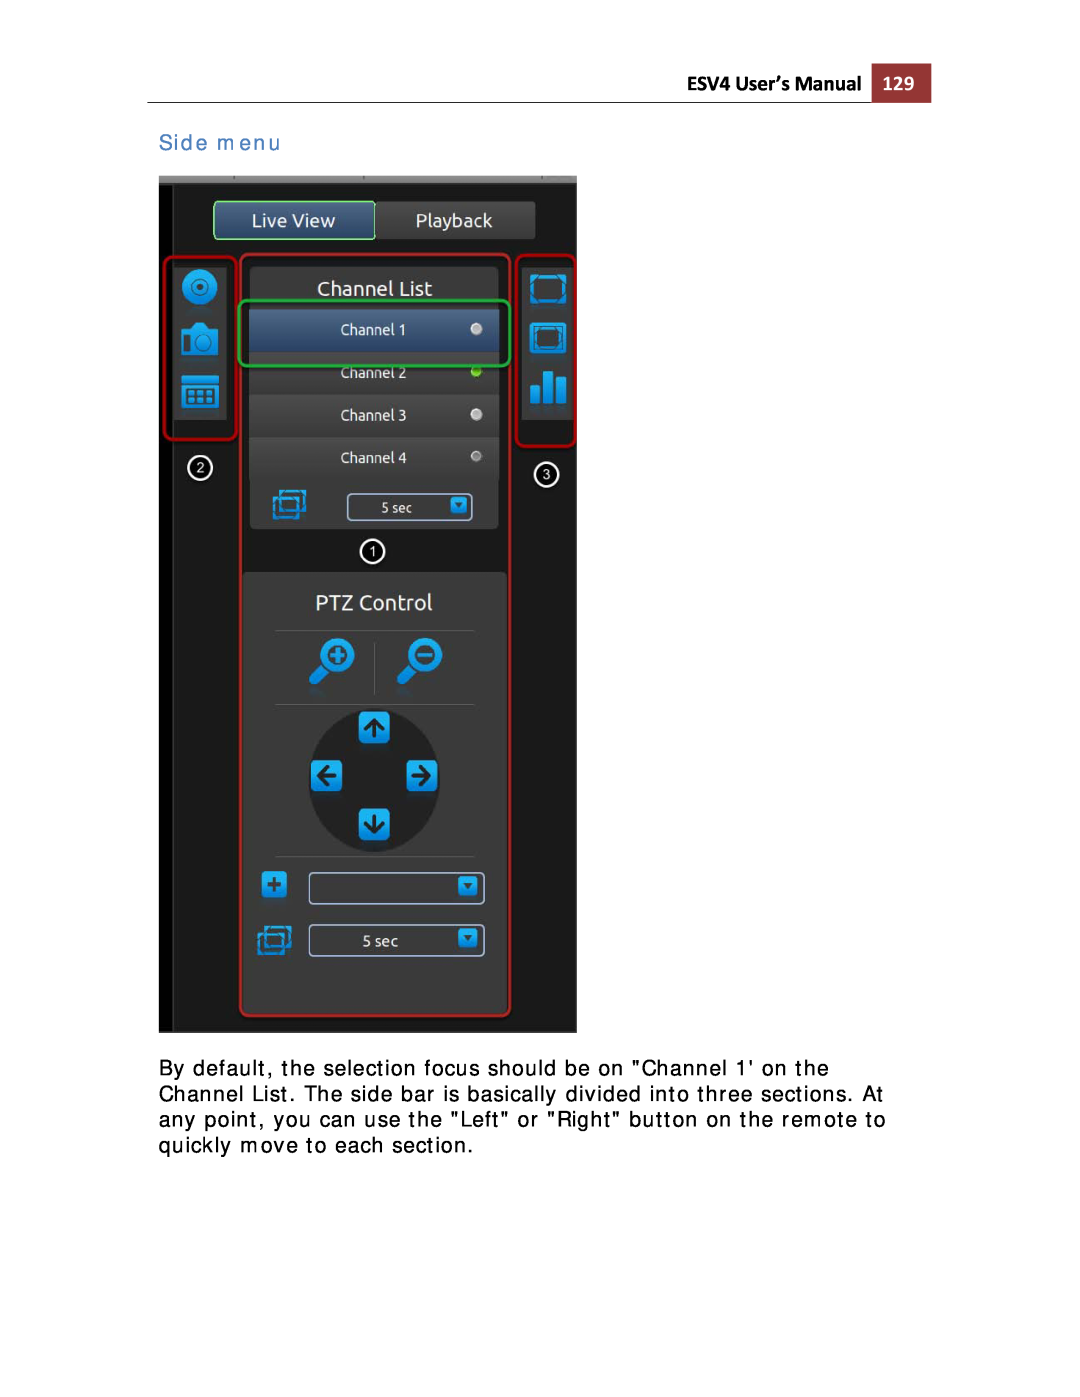 Toshiba ESV41T user manual Side menu, ESV4 User’s Manual 